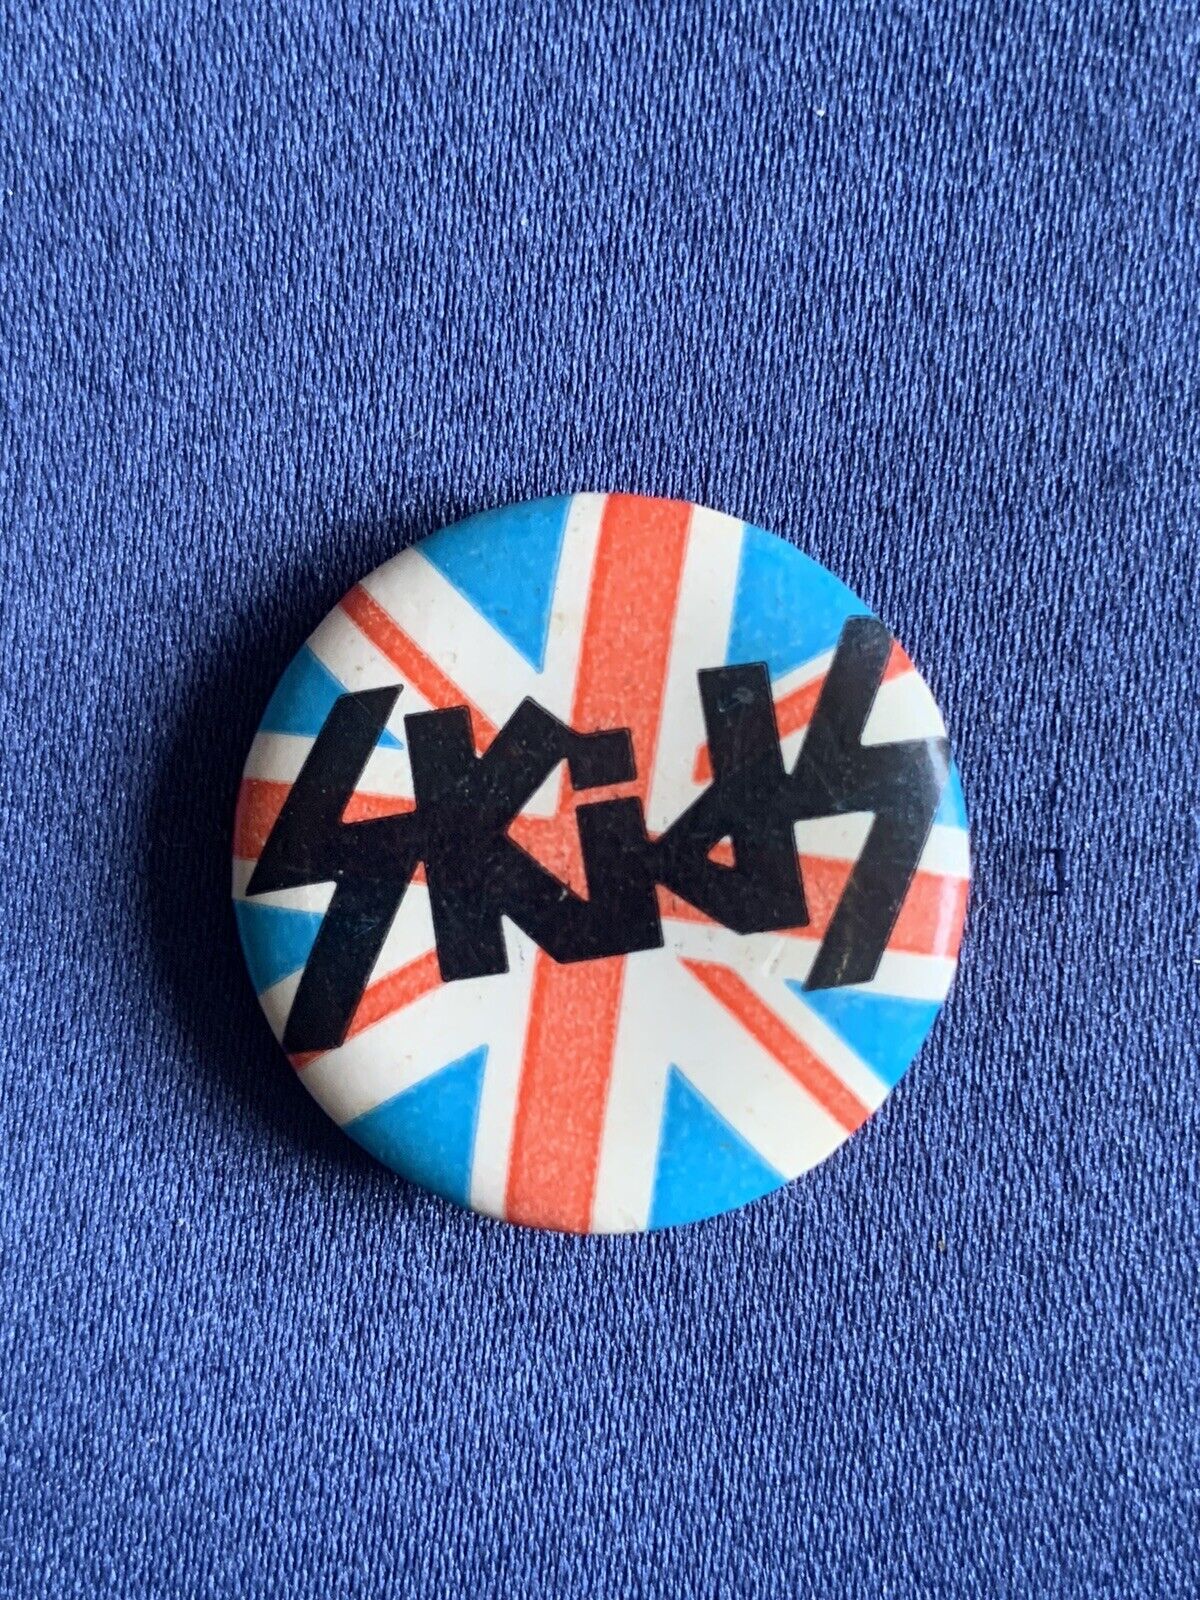 Skids 1979-80 Vintage Original Pin-back Punk Rock New Wave Scottish Band